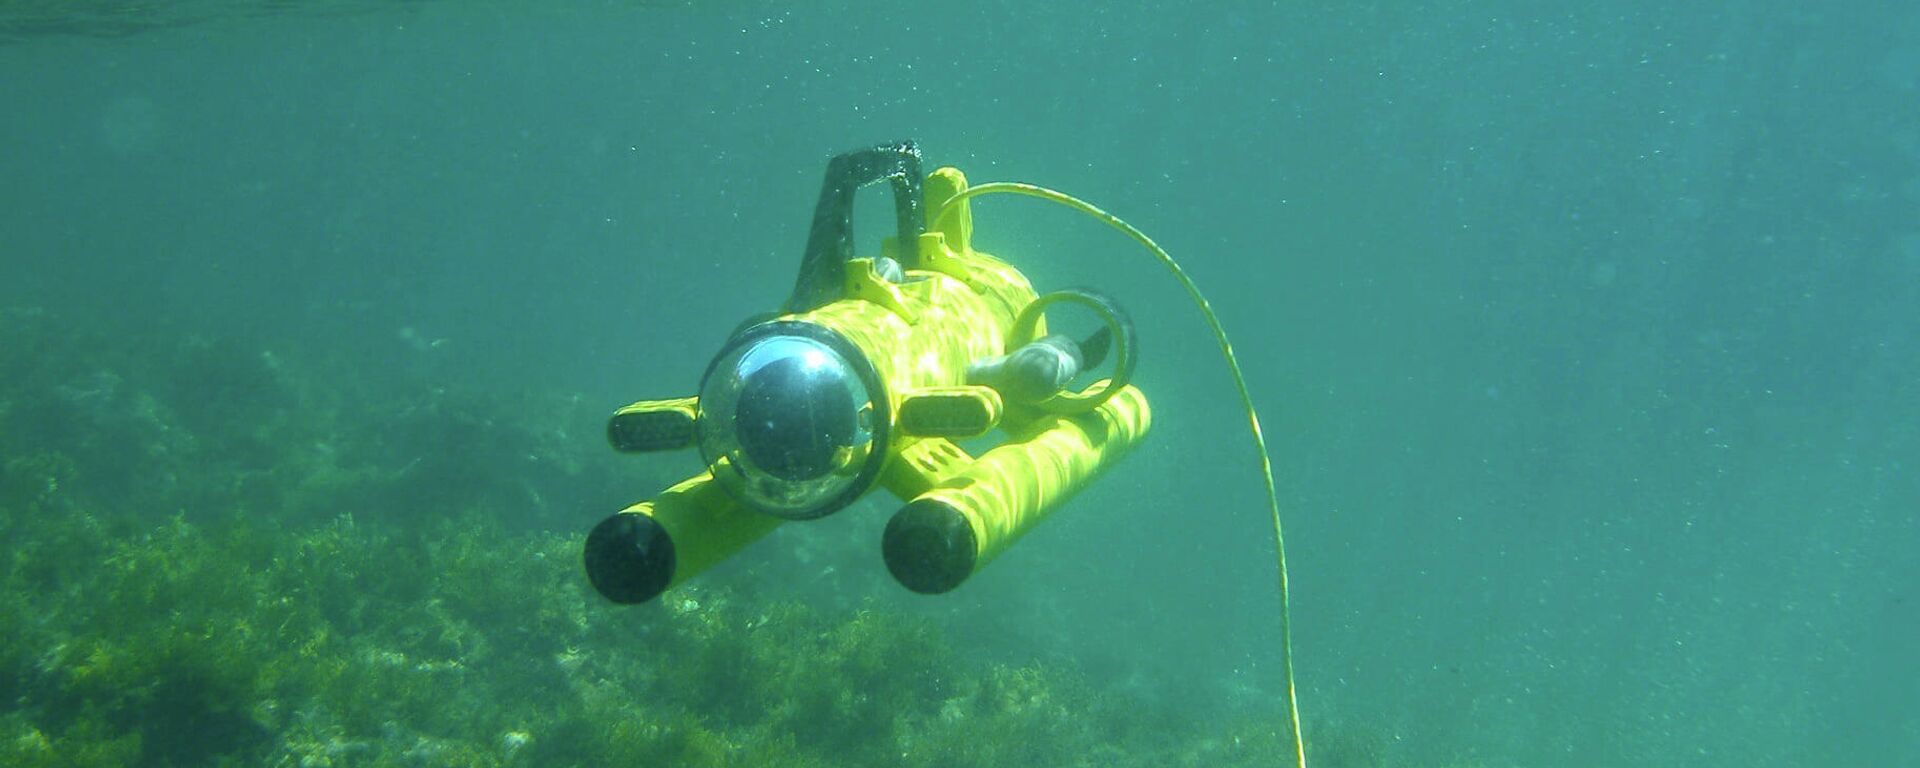 Роботы исследуют дно Черного моря у побережья Грузии - Sputnik Грузия, 1920, 02.09.2021